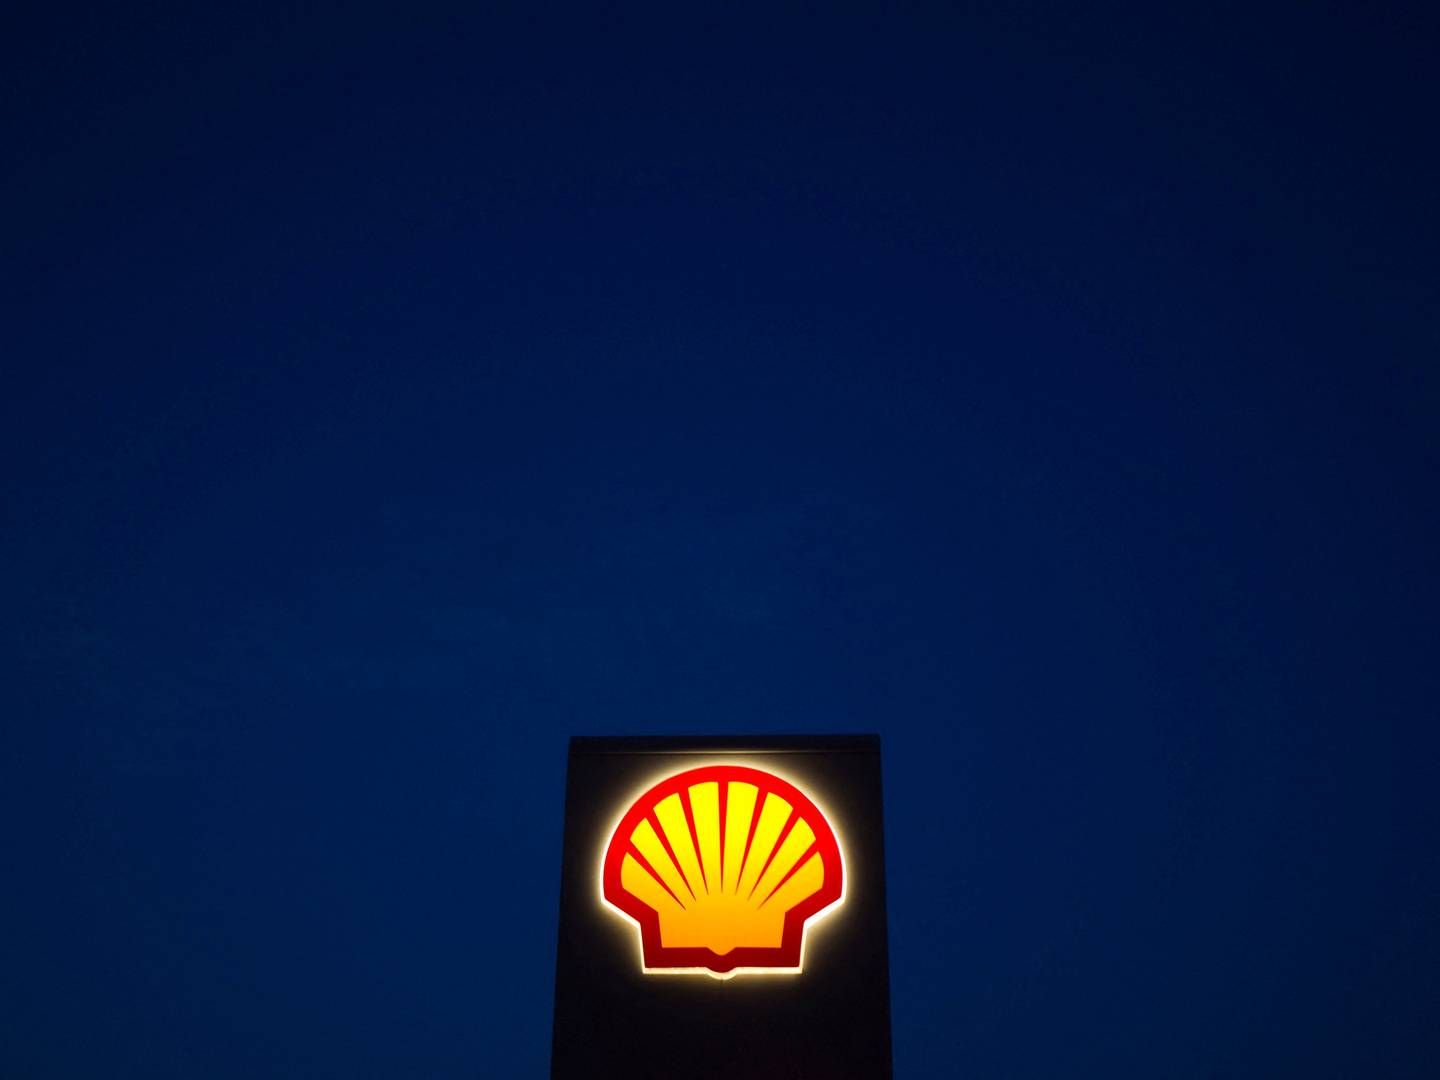 Shell er blandt de selskaber, der bliver sagsøgt. | Foto: Morteza Nikoubazl/Reuters/Ritzau Scanpix